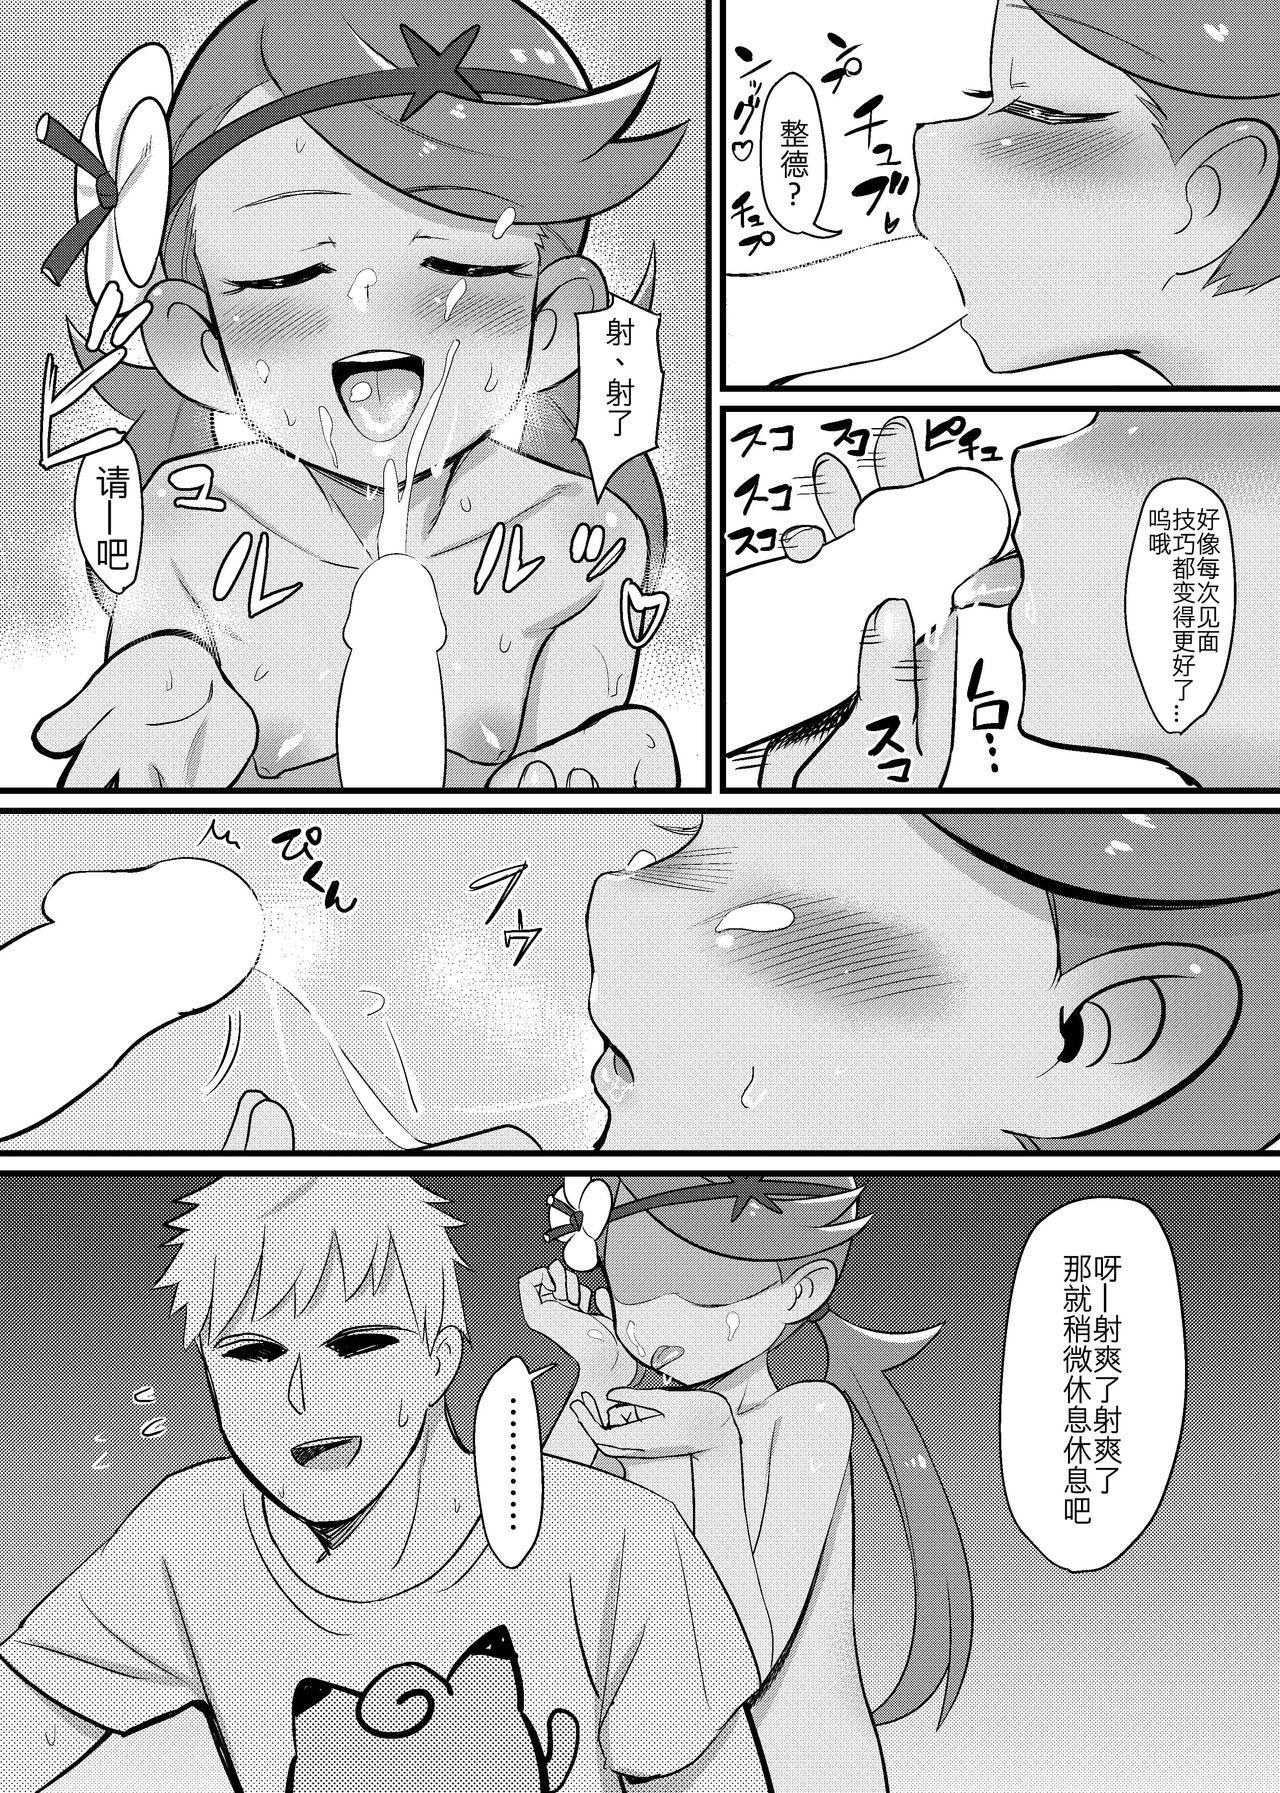 Massage Sex Alola Fever!!! - Pokemon Jap - Page 10